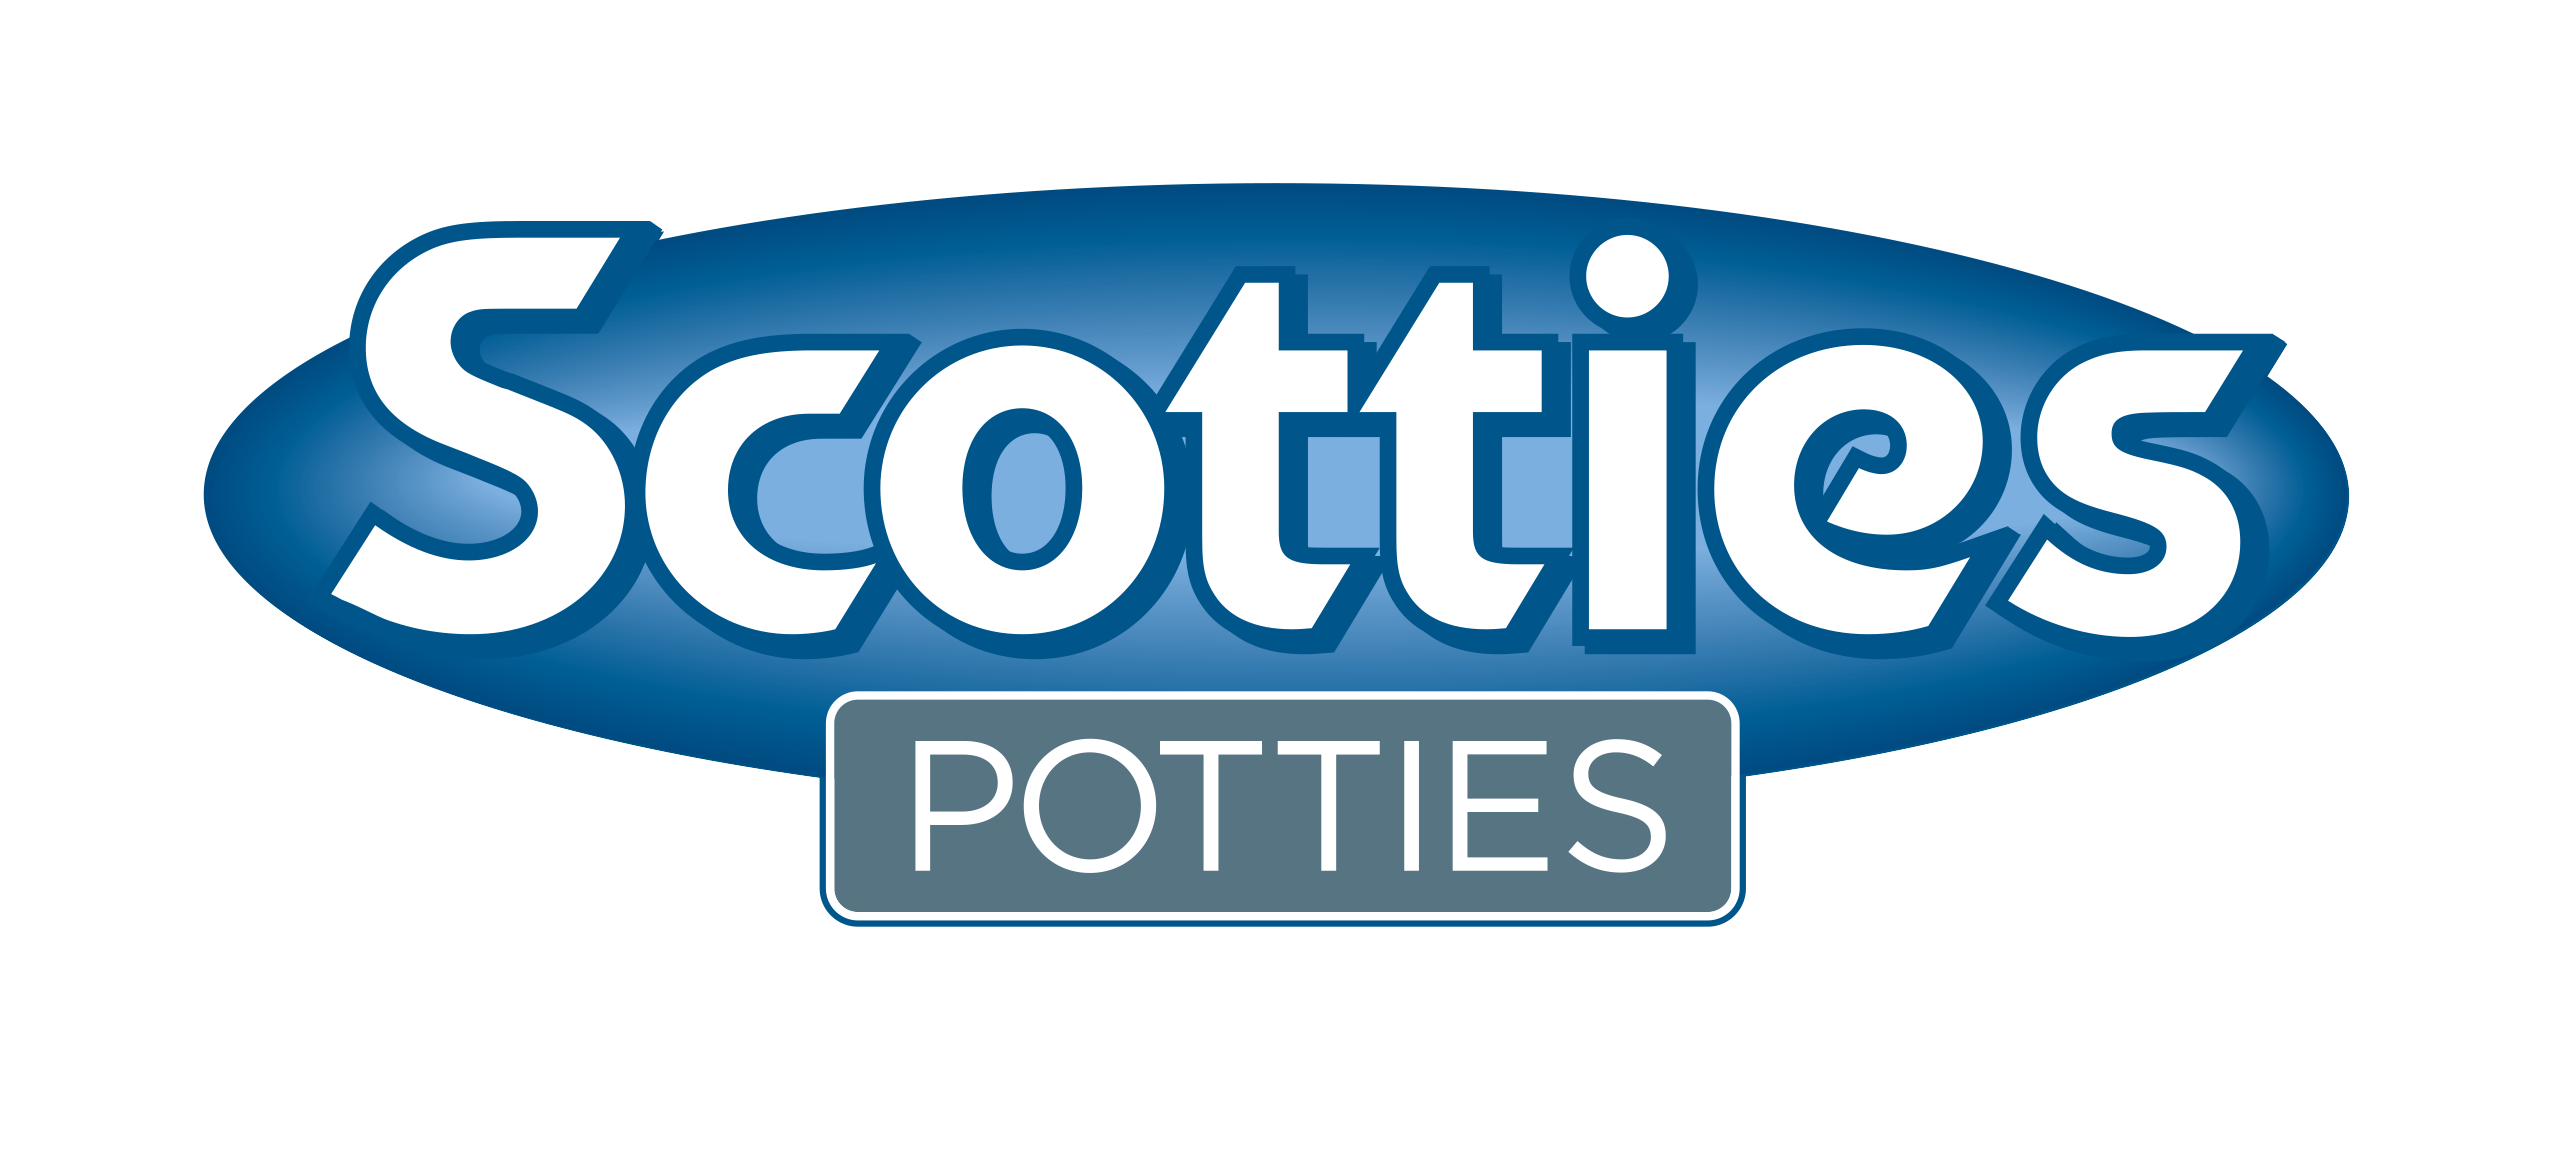 Scotties Potties